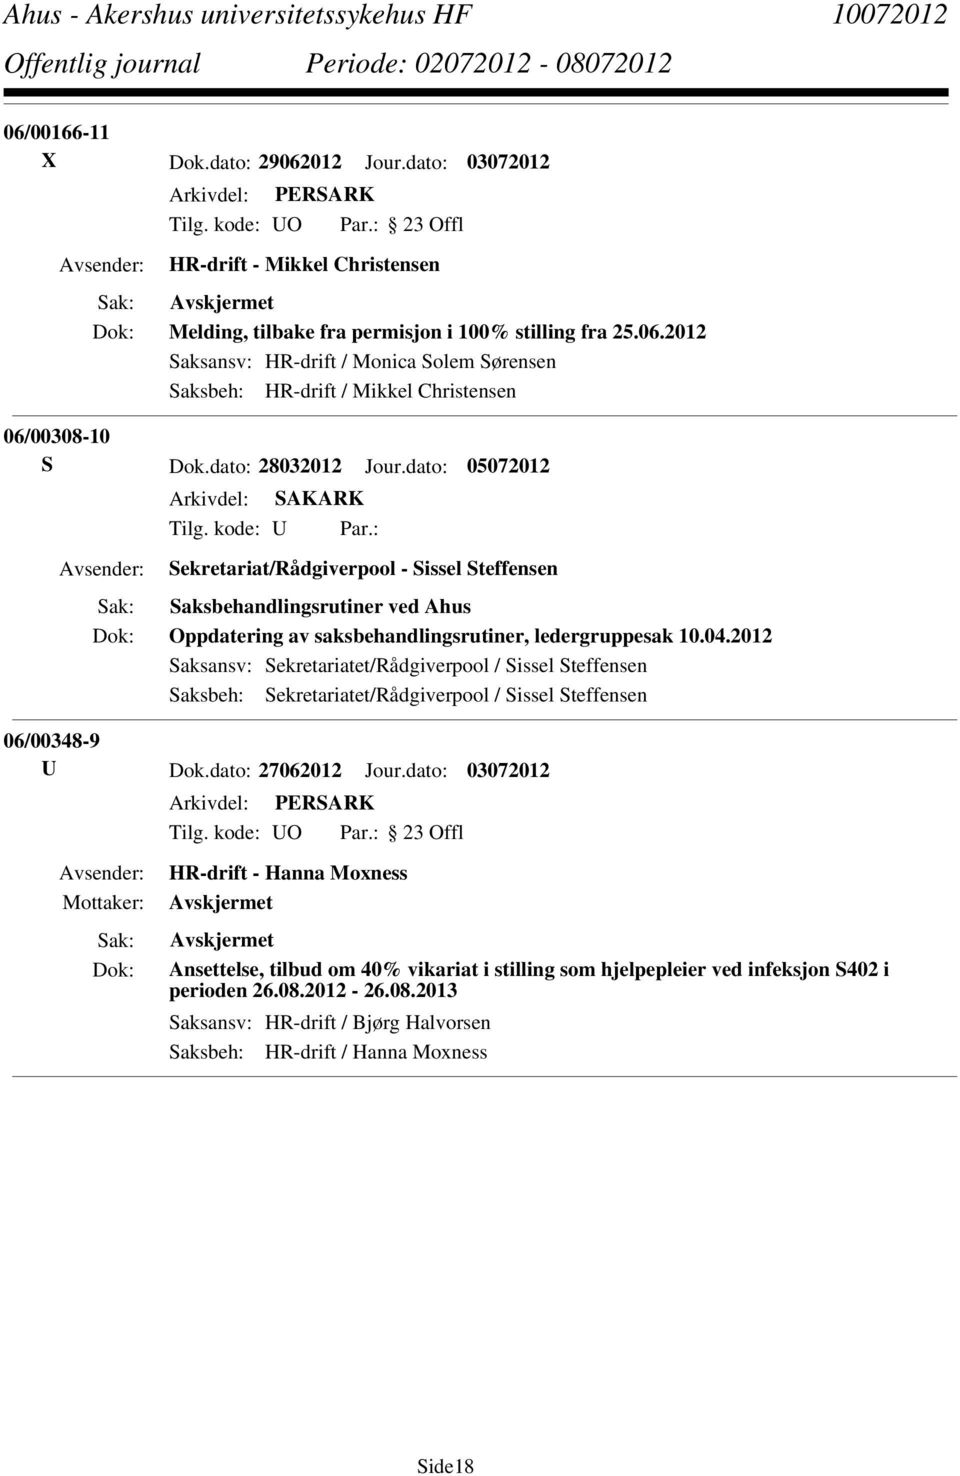 2012 Saksansv: Sekretariatet/Rådgiverpool / Sissel Steffensen Saksbeh: Sekretariatet/Rådgiverpool / Sissel Steffensen 06/00348-9 U Dok.dato: 27062012 Jour.